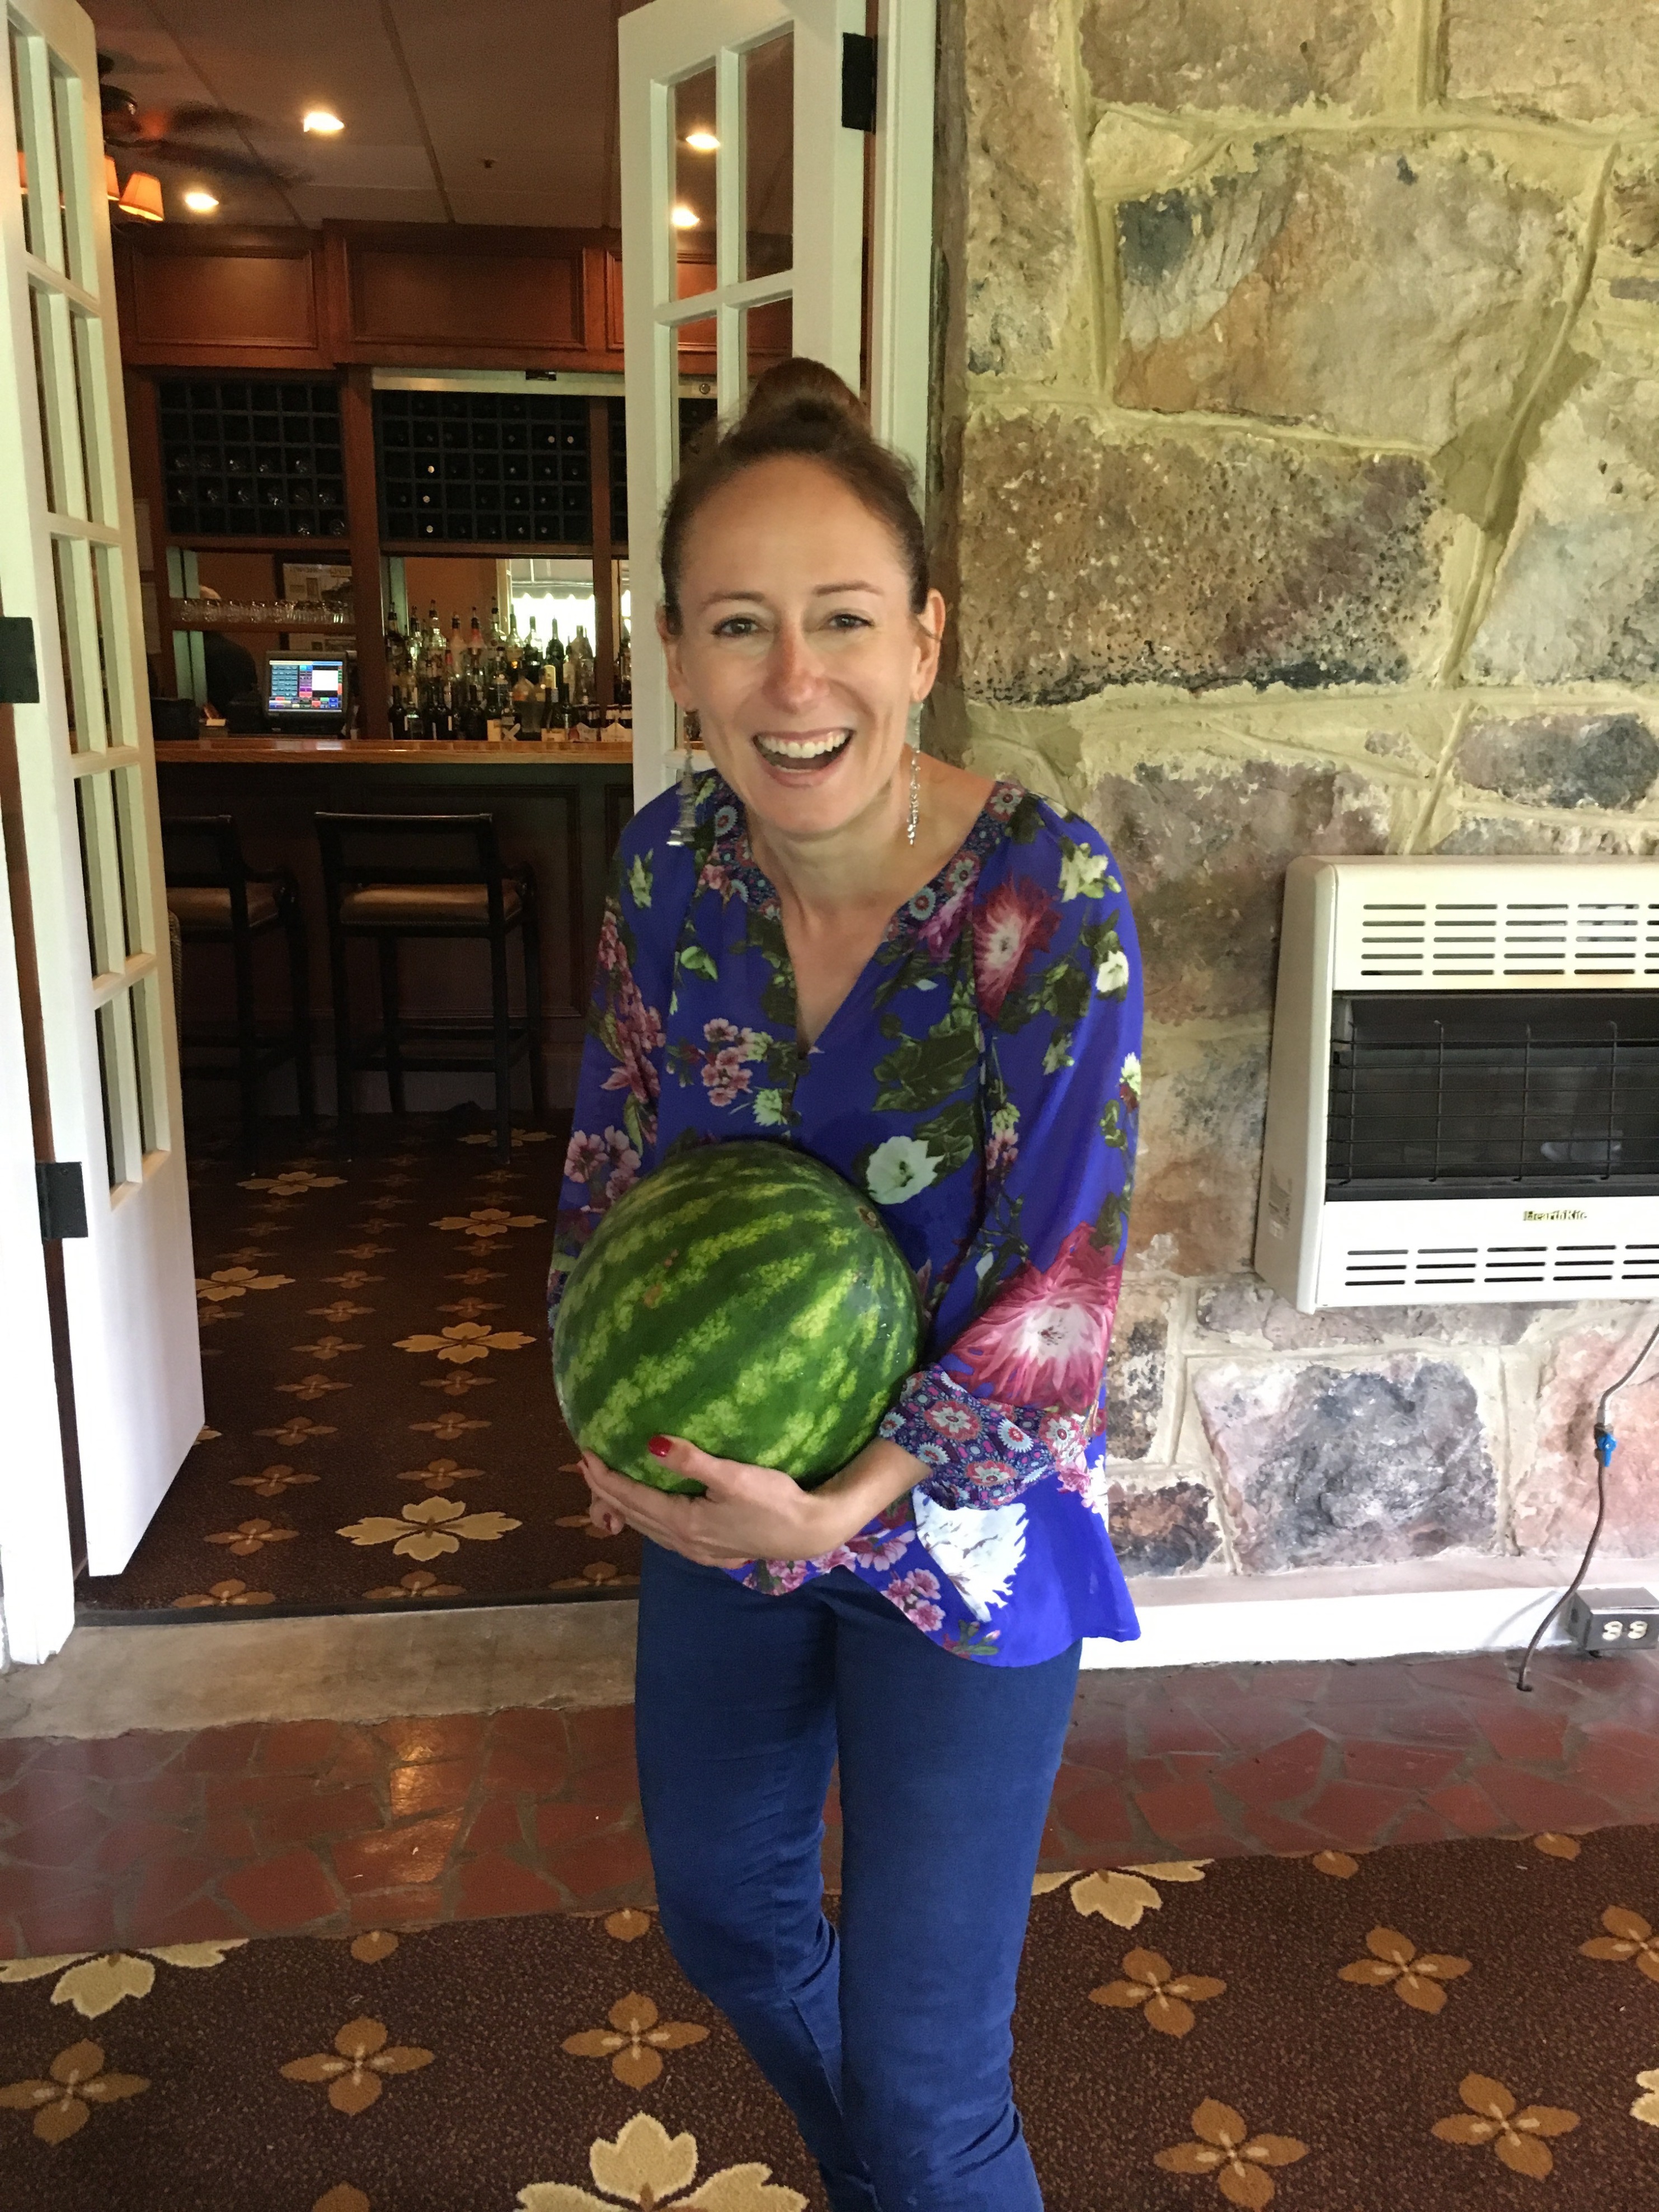 Photo: Marie-Julie Gagnon Impossible de ne pas trimballer un melon d'eau question de se mettre bien dans l'ambiance!